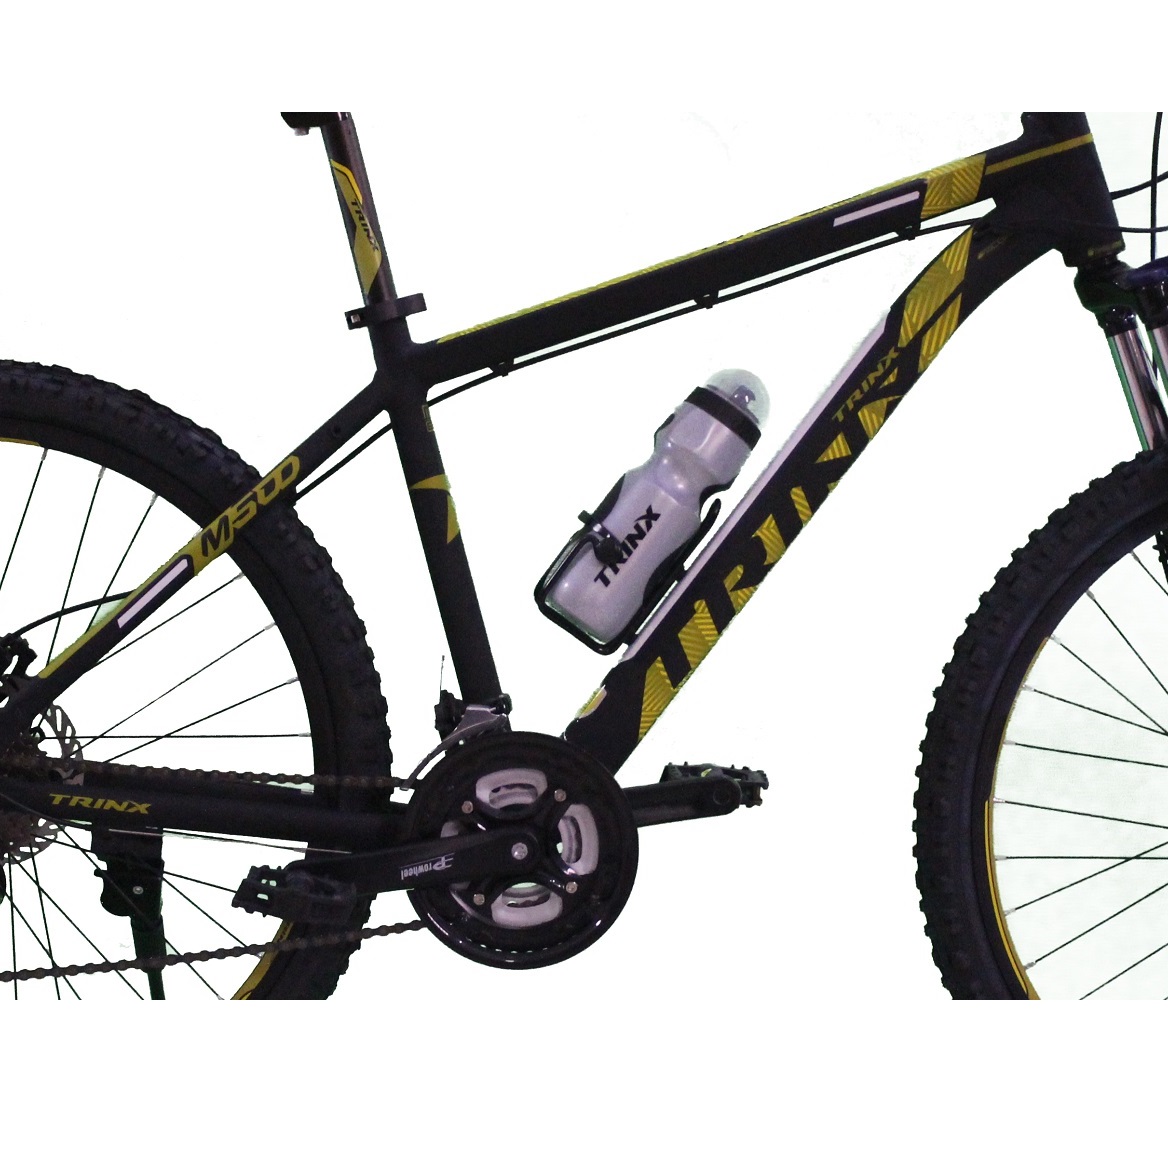 دوچرخه کوهستان ترینکس مدل M500 سایز 26